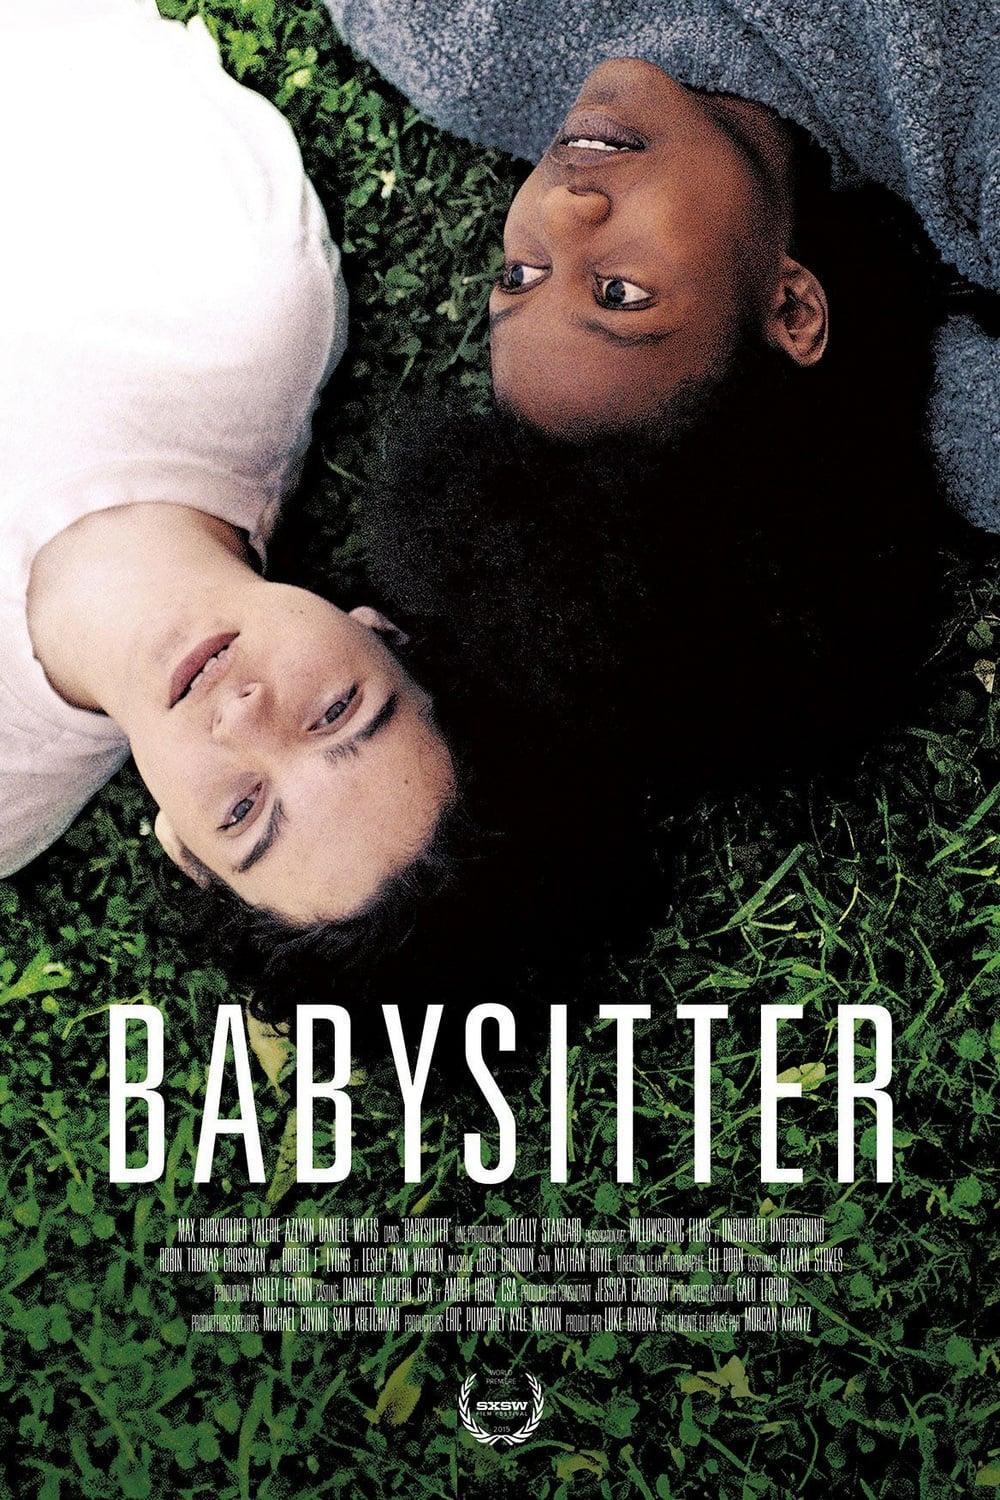 Babysitter poster